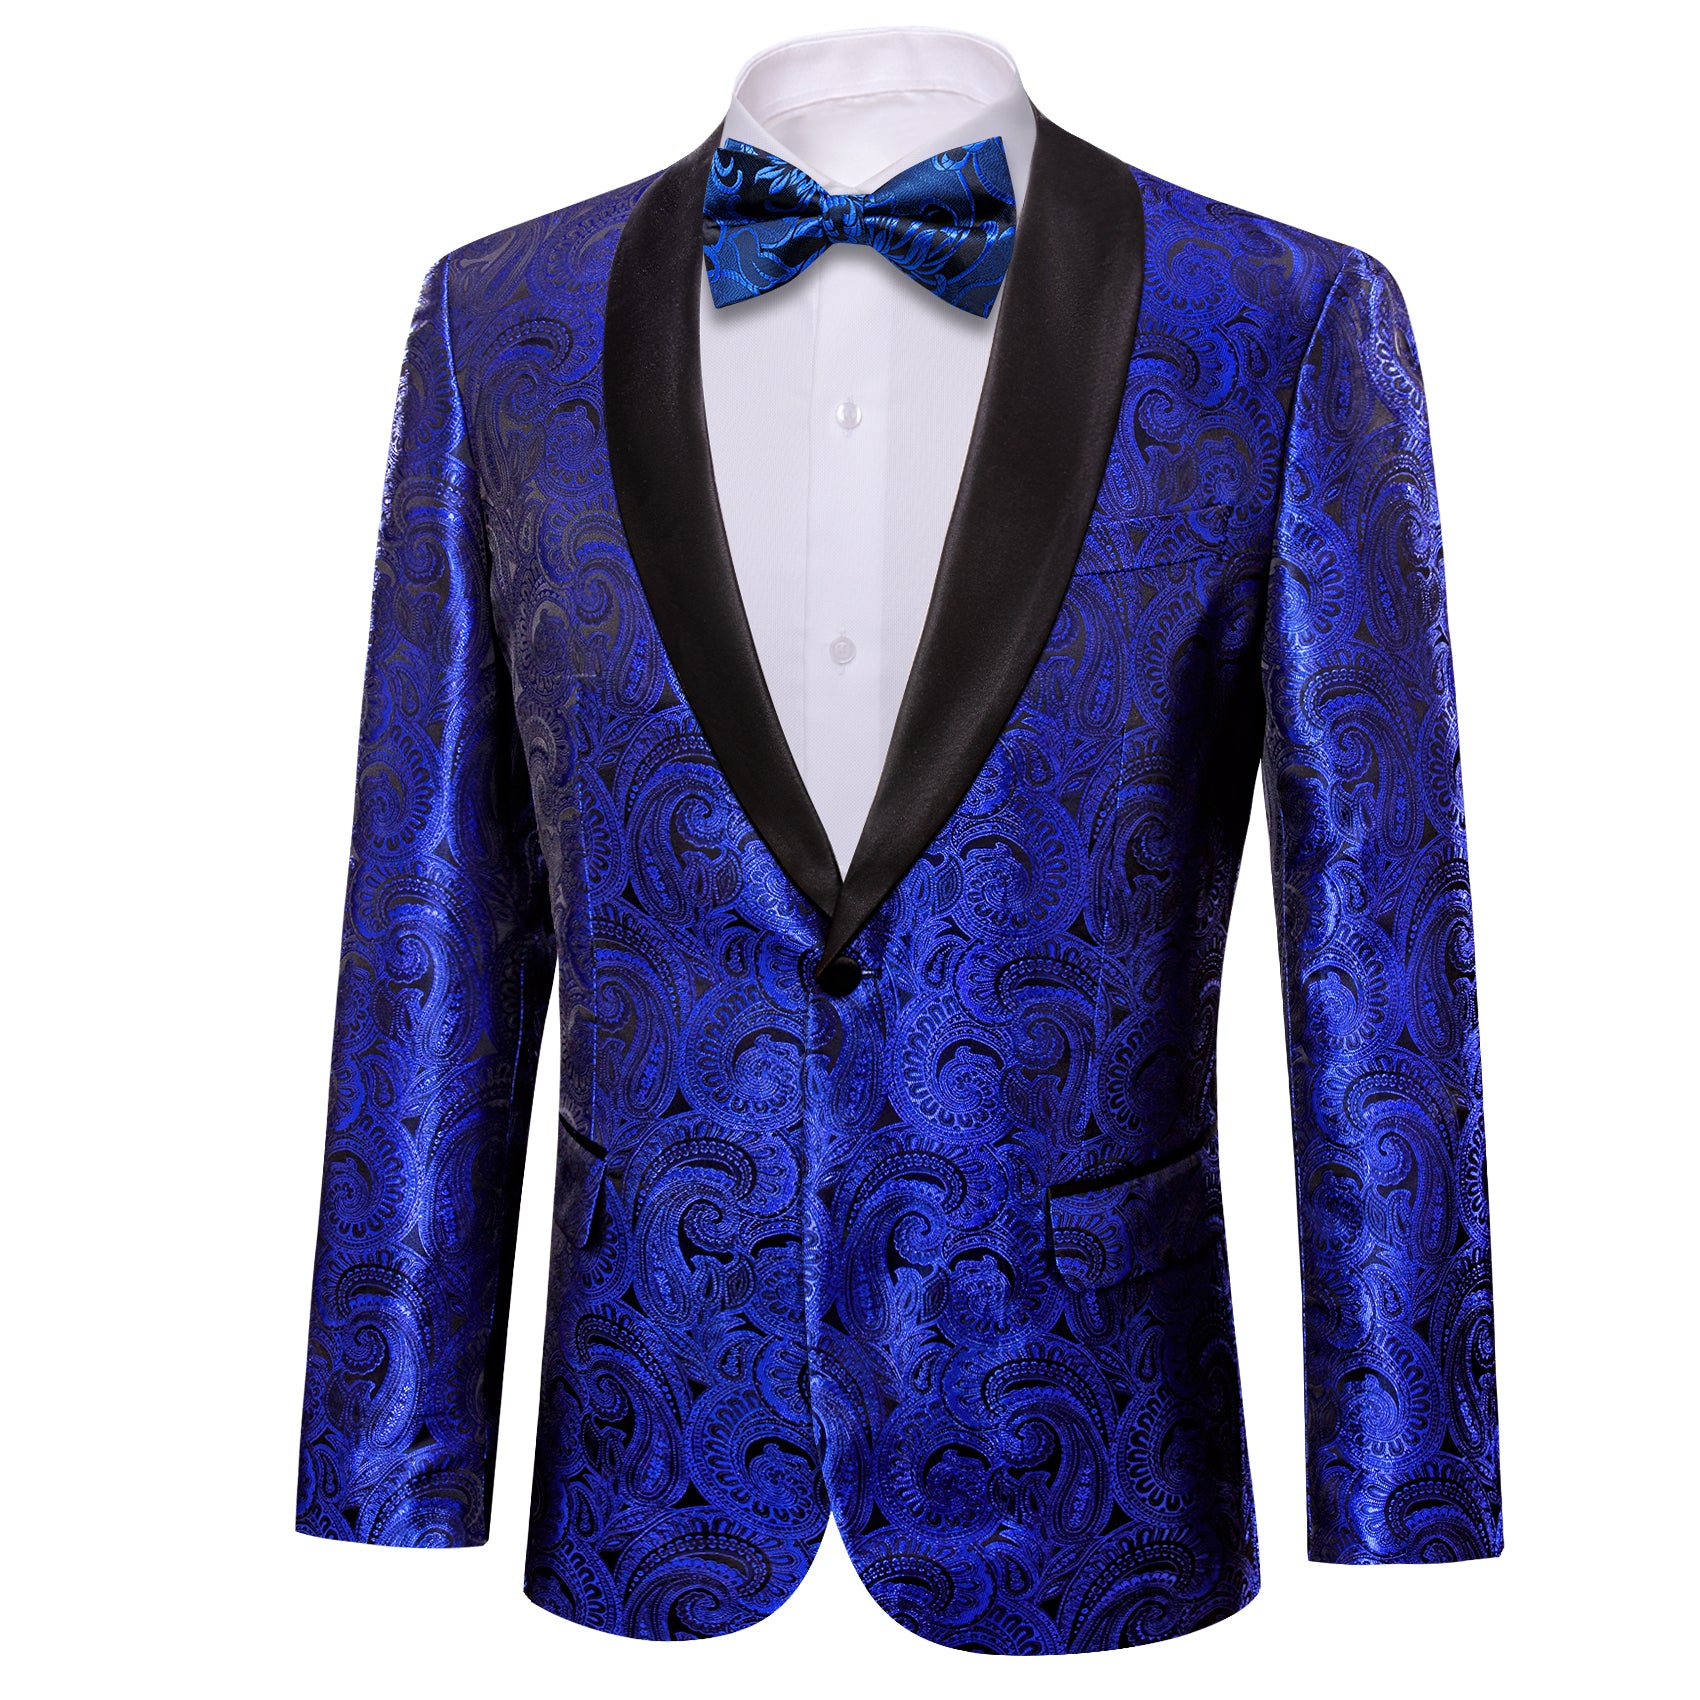 Barry.wang Men's Suit Cobalt Blue Floral Silk Shawl Collar Suit Jacket